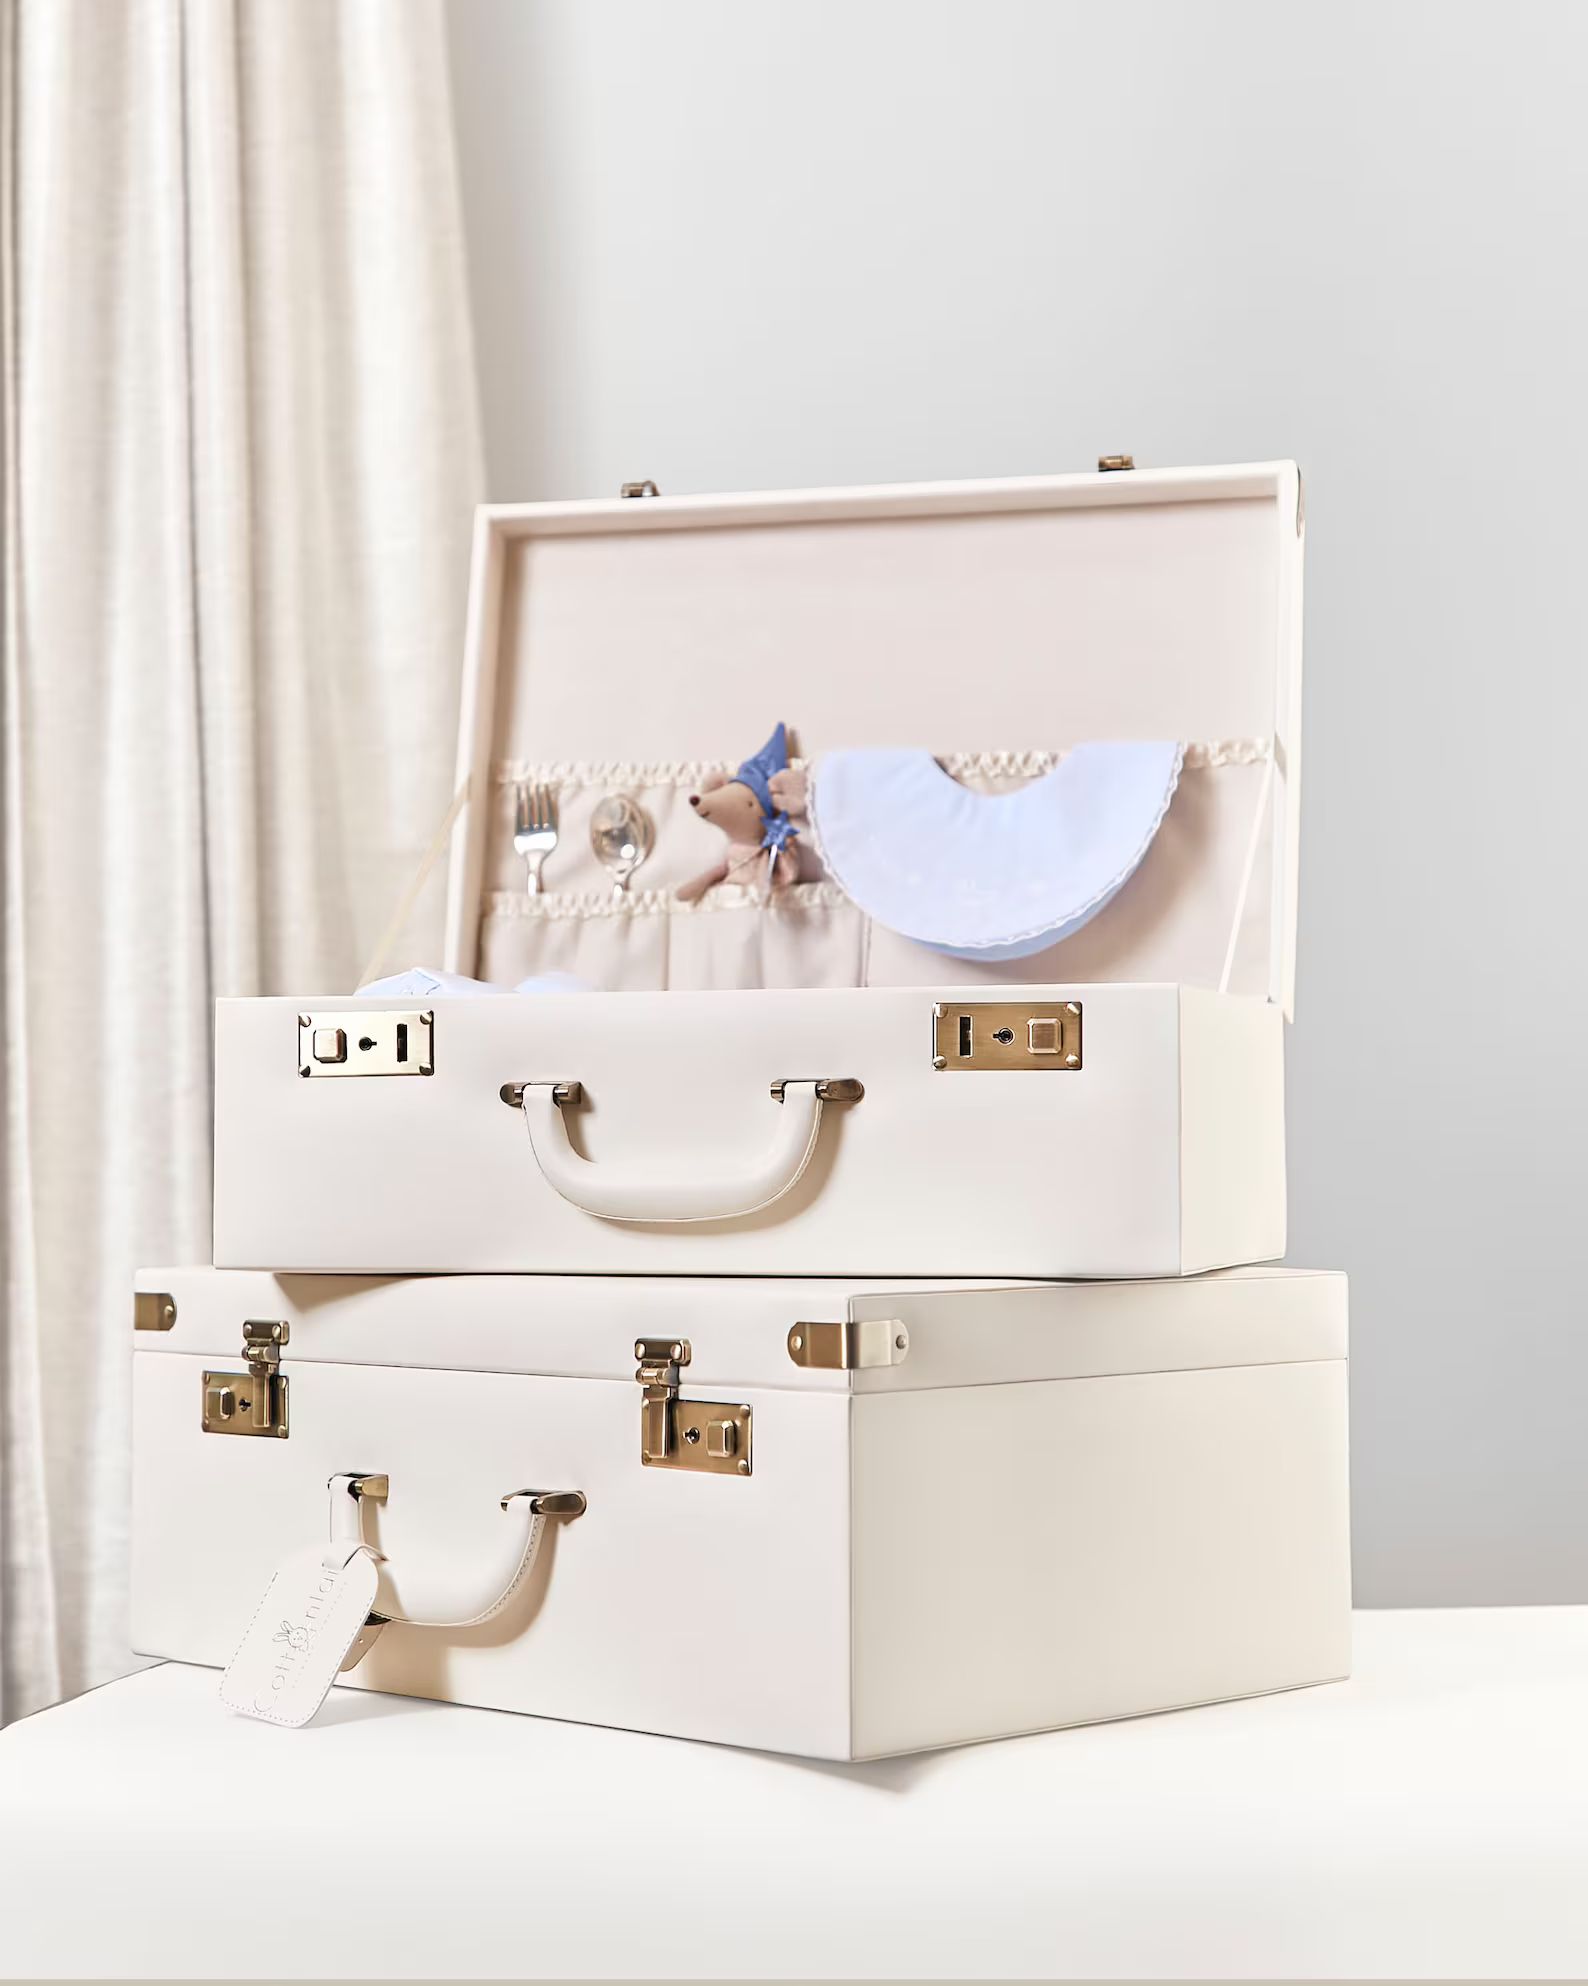 Valise | Memory Case | Keepsake Memory Box | New Baby Gift | Baby Suitcase | Etsy (US)